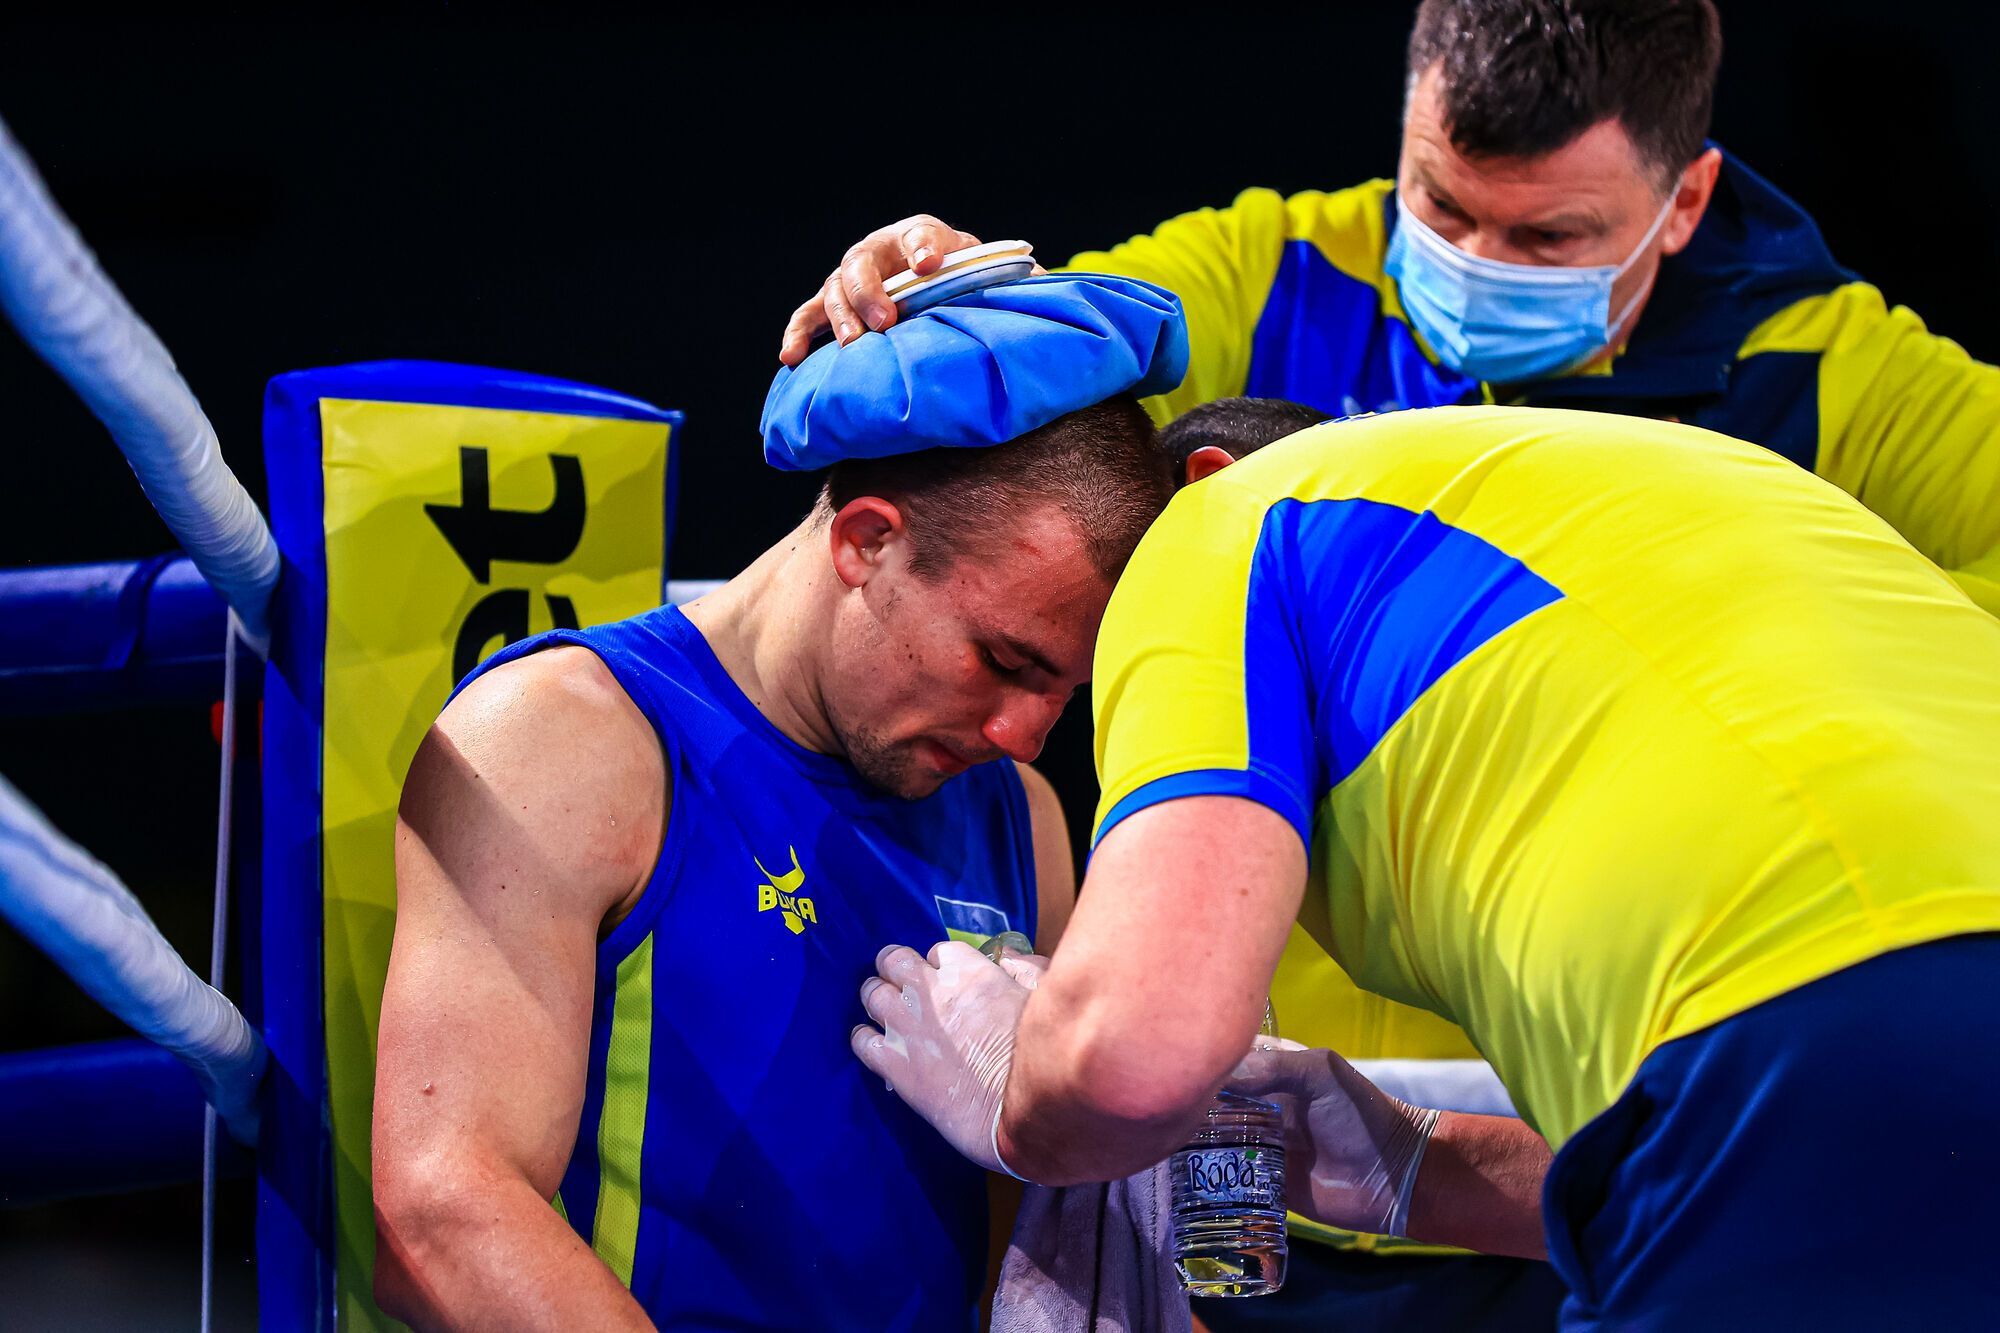 Боксер, предавший Украину, числится боевиком "Оплота" и рвется к чемпионскому поясу